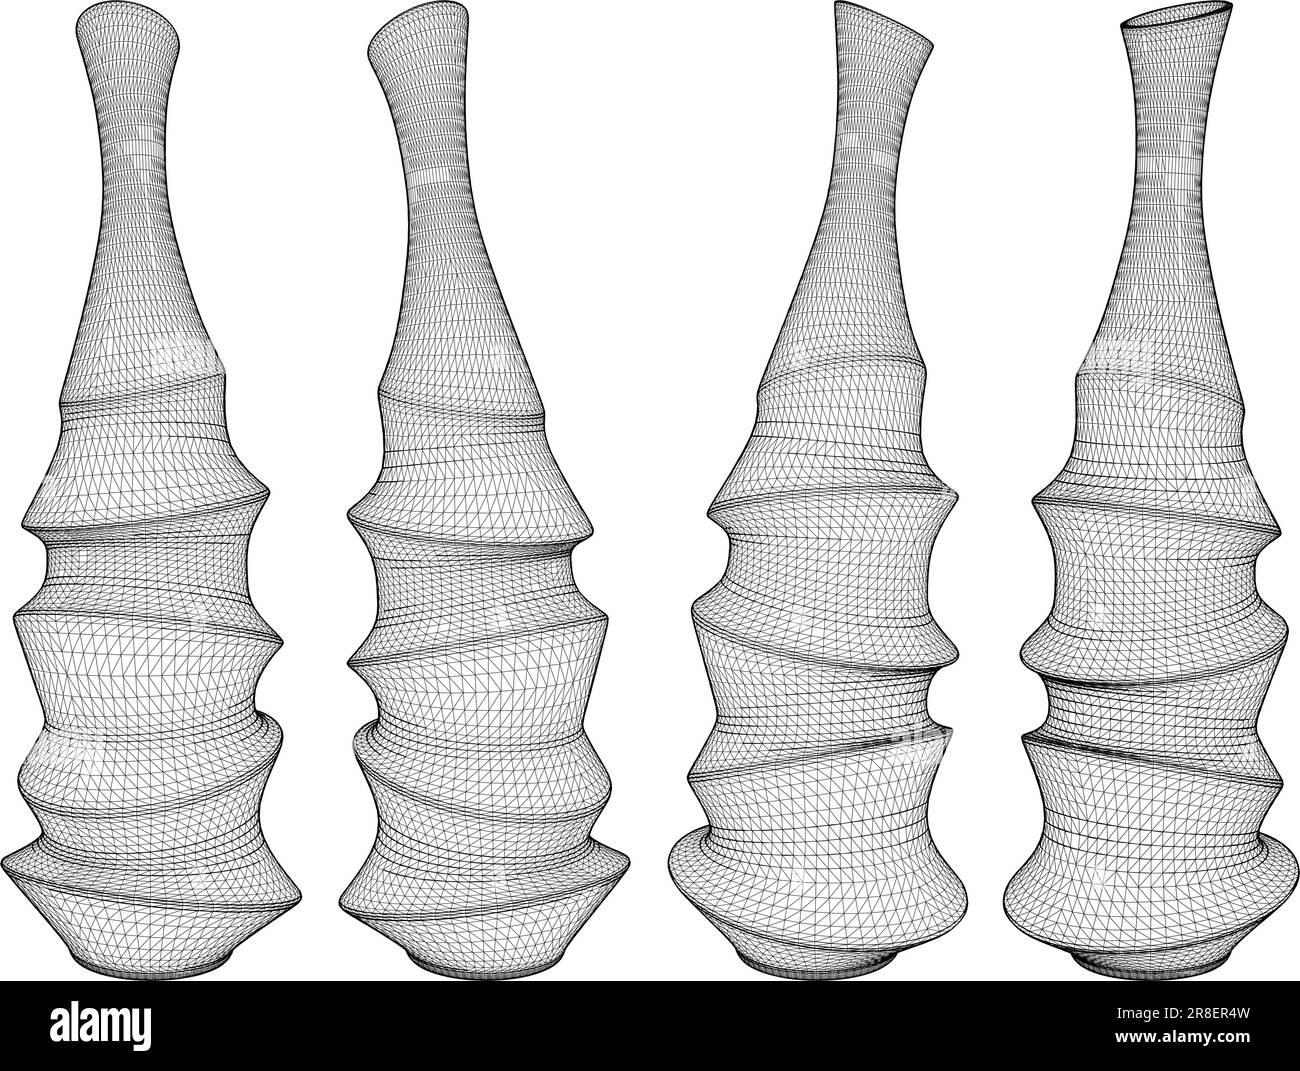 Vase-Vektor Im Art Déco-Stil. Abbildung Isoliert Auf Weißem Hintergrund. Eine Vektordarstellung einer abstrakten Vase. Stock Vektor